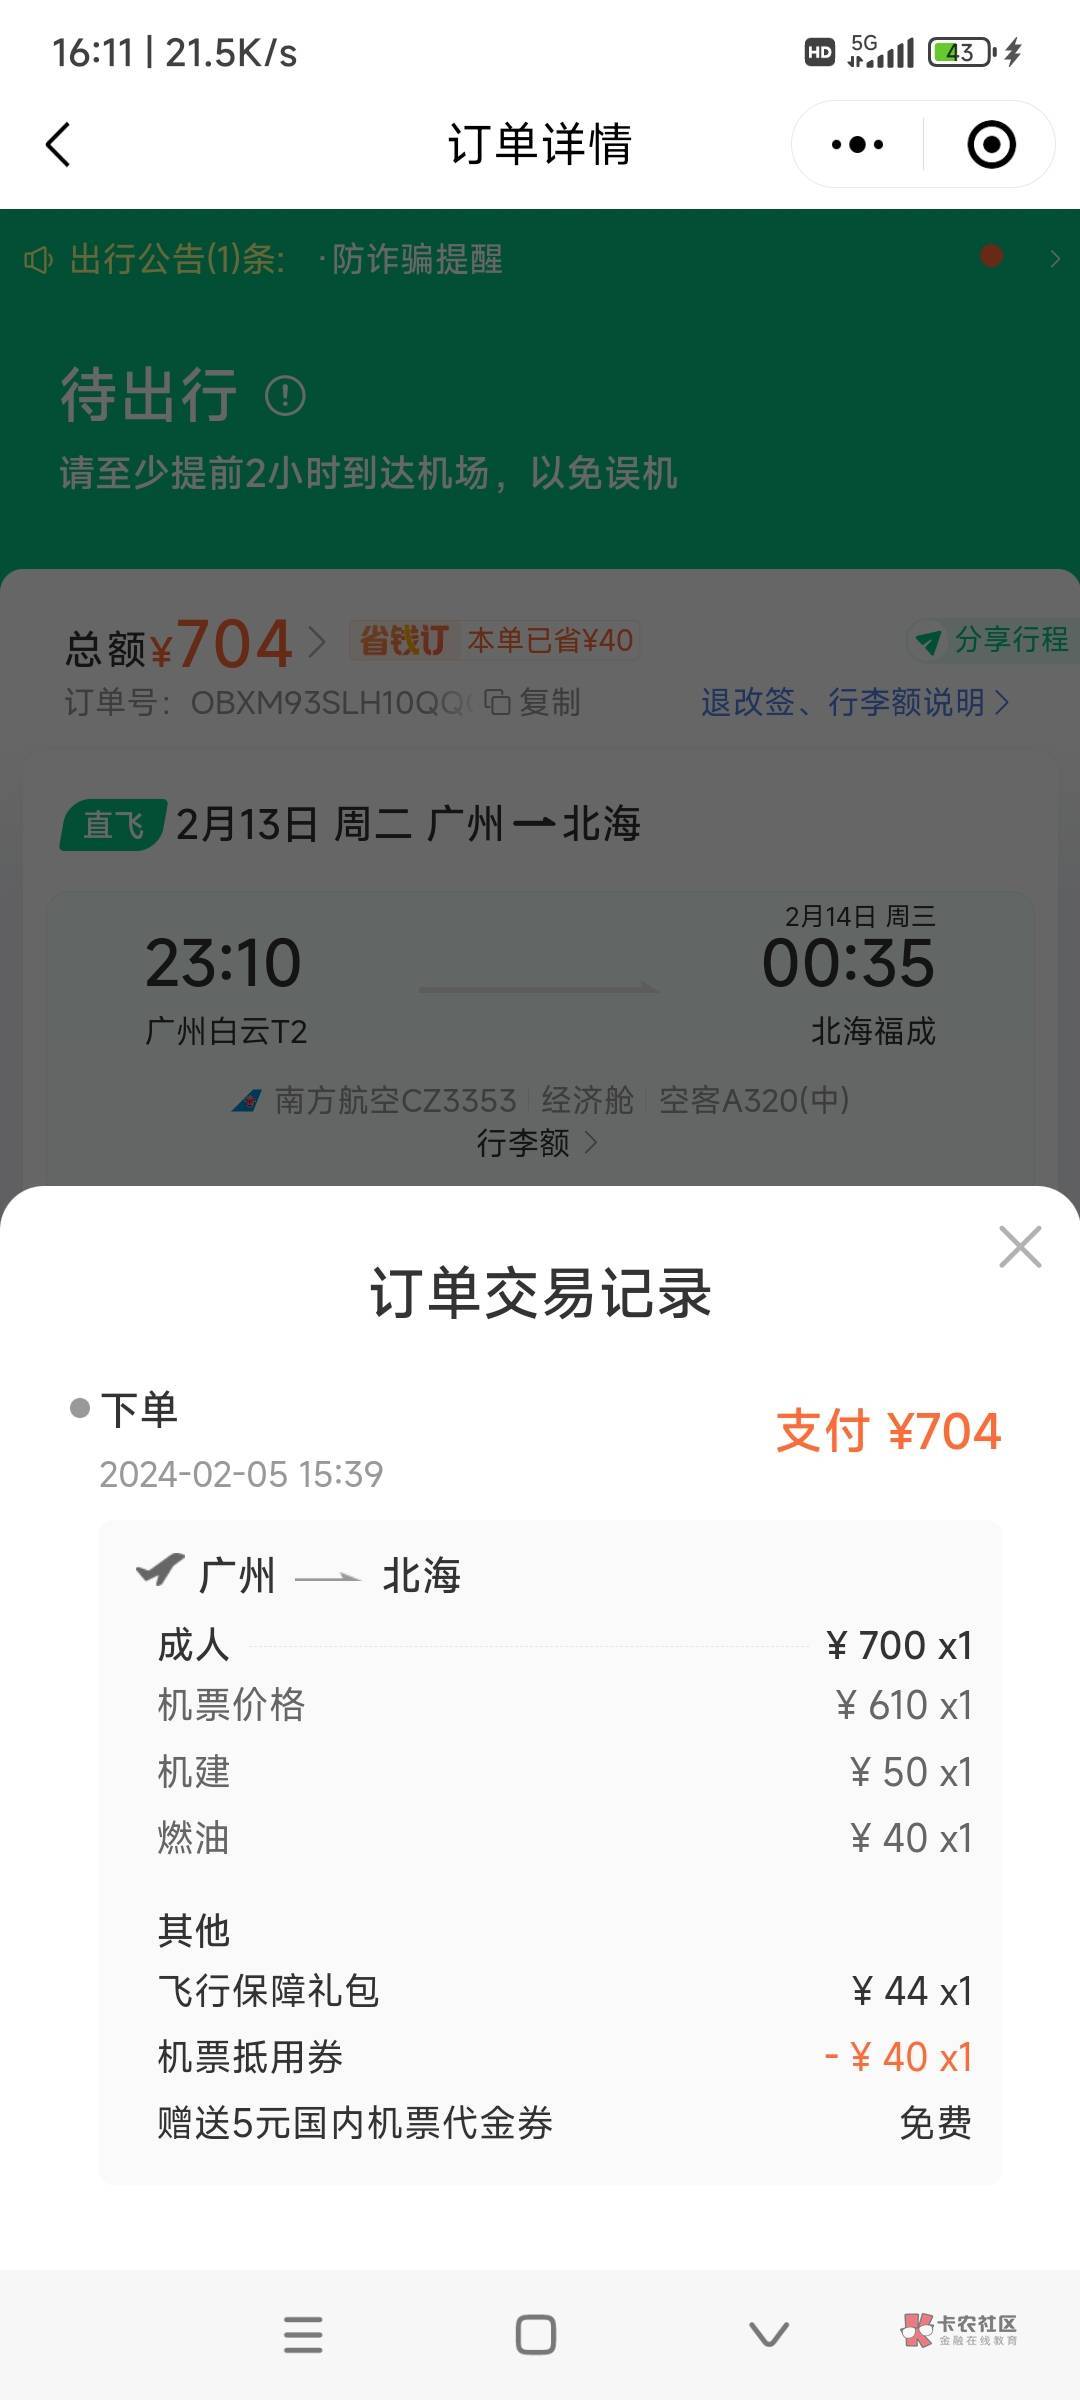 同程南航第4次毕业了129.37利润，买广州到北海机票700退款是780，用了同程40机票和宁90 / 作者:时日无多 / 